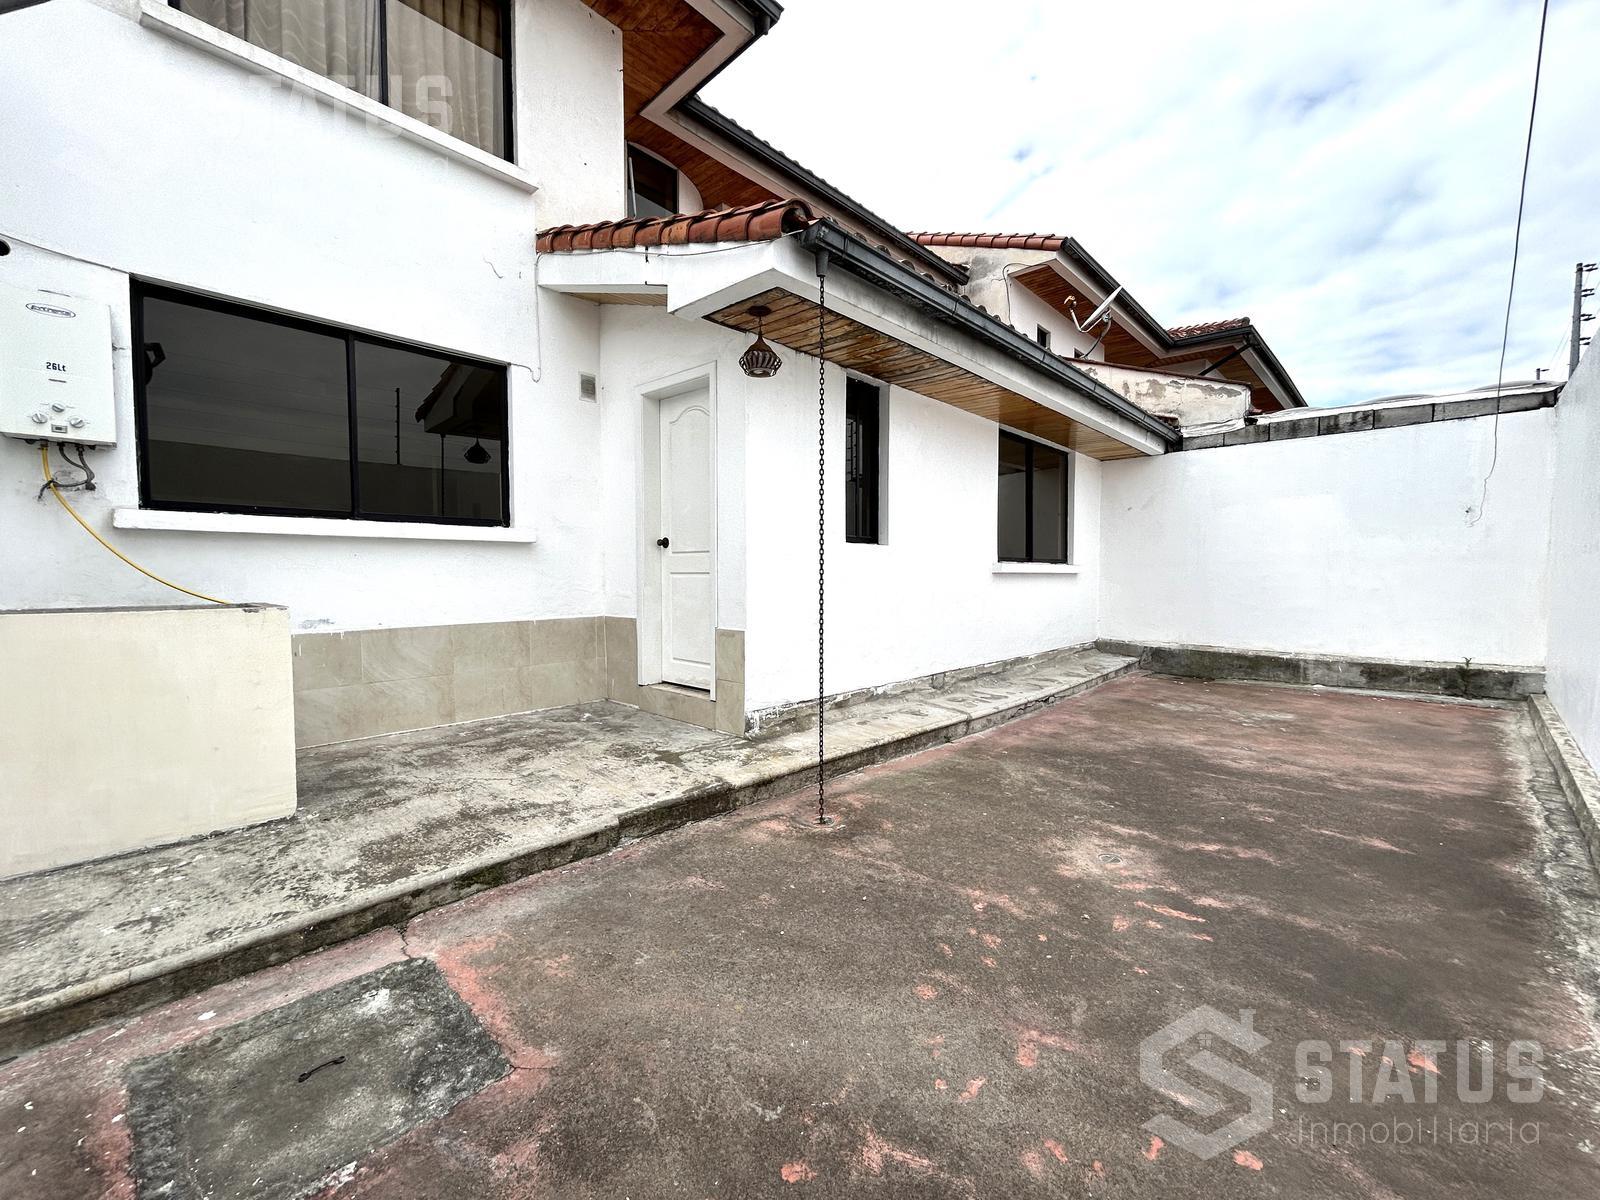 Rento casa en conjunto, sector Mirasierra, 3 Dorm., 2 garajes, 142m, $450